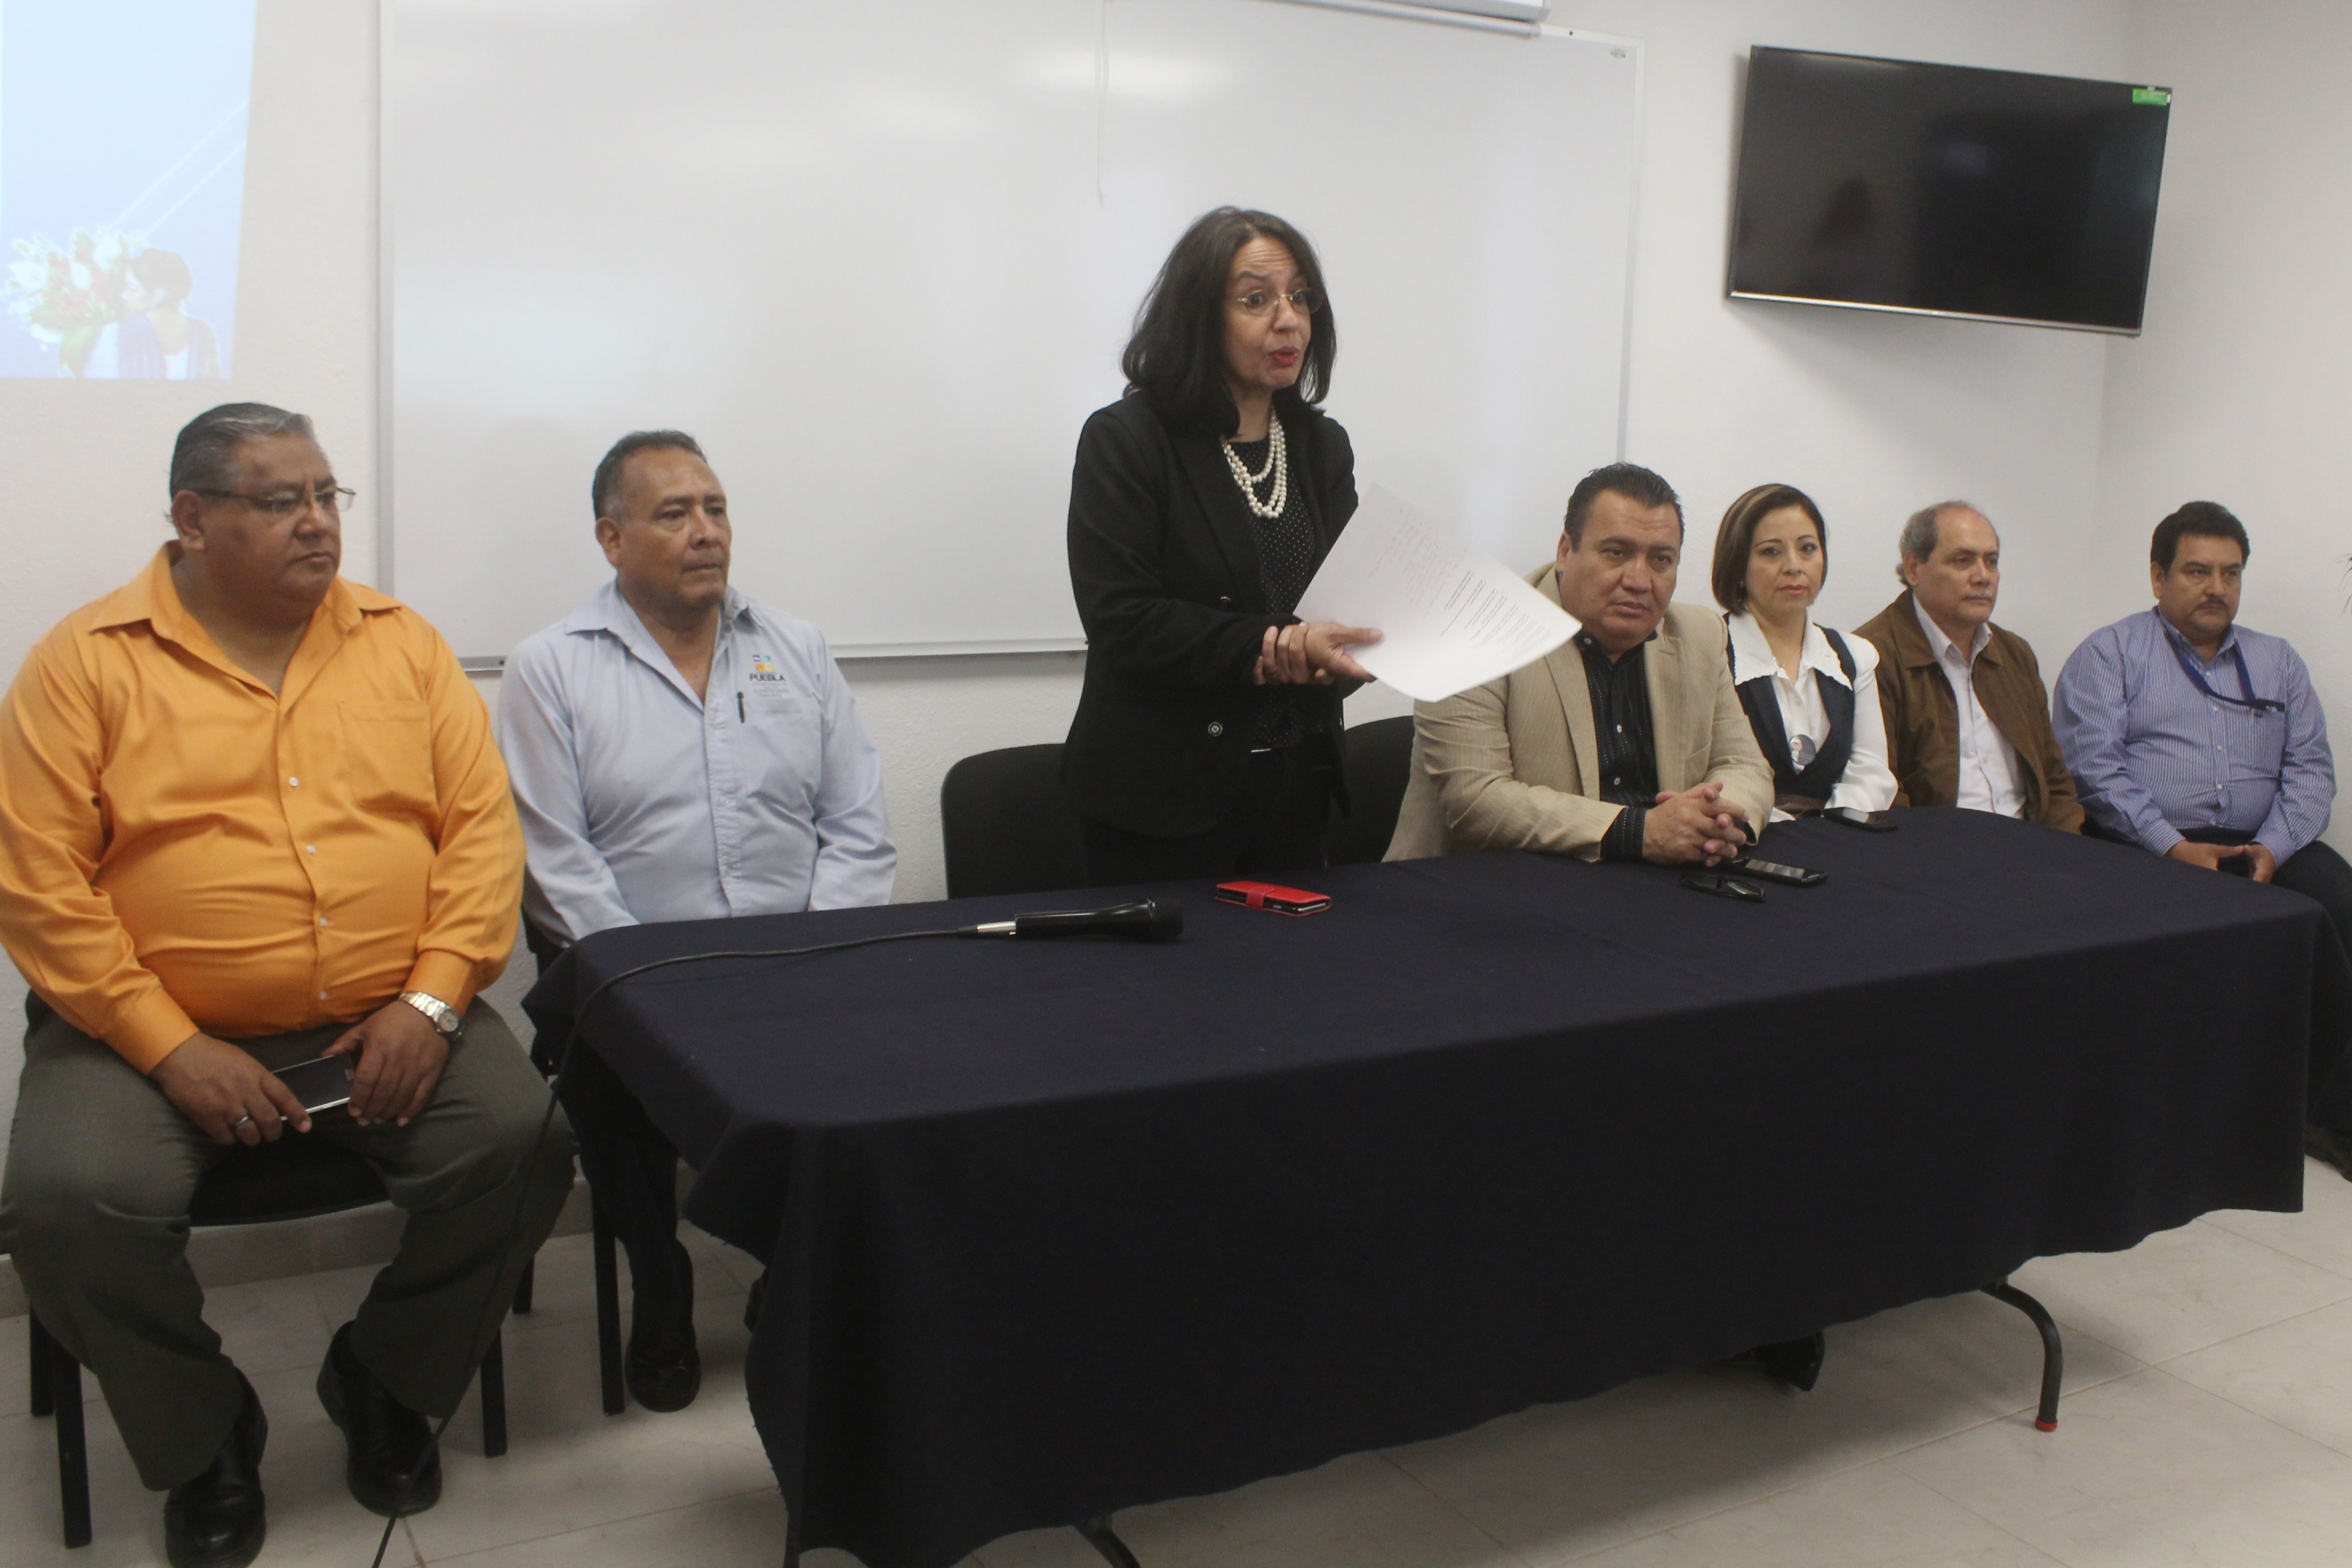 Fiscalía realiza jornada de salud para la mujer en Tehuacán